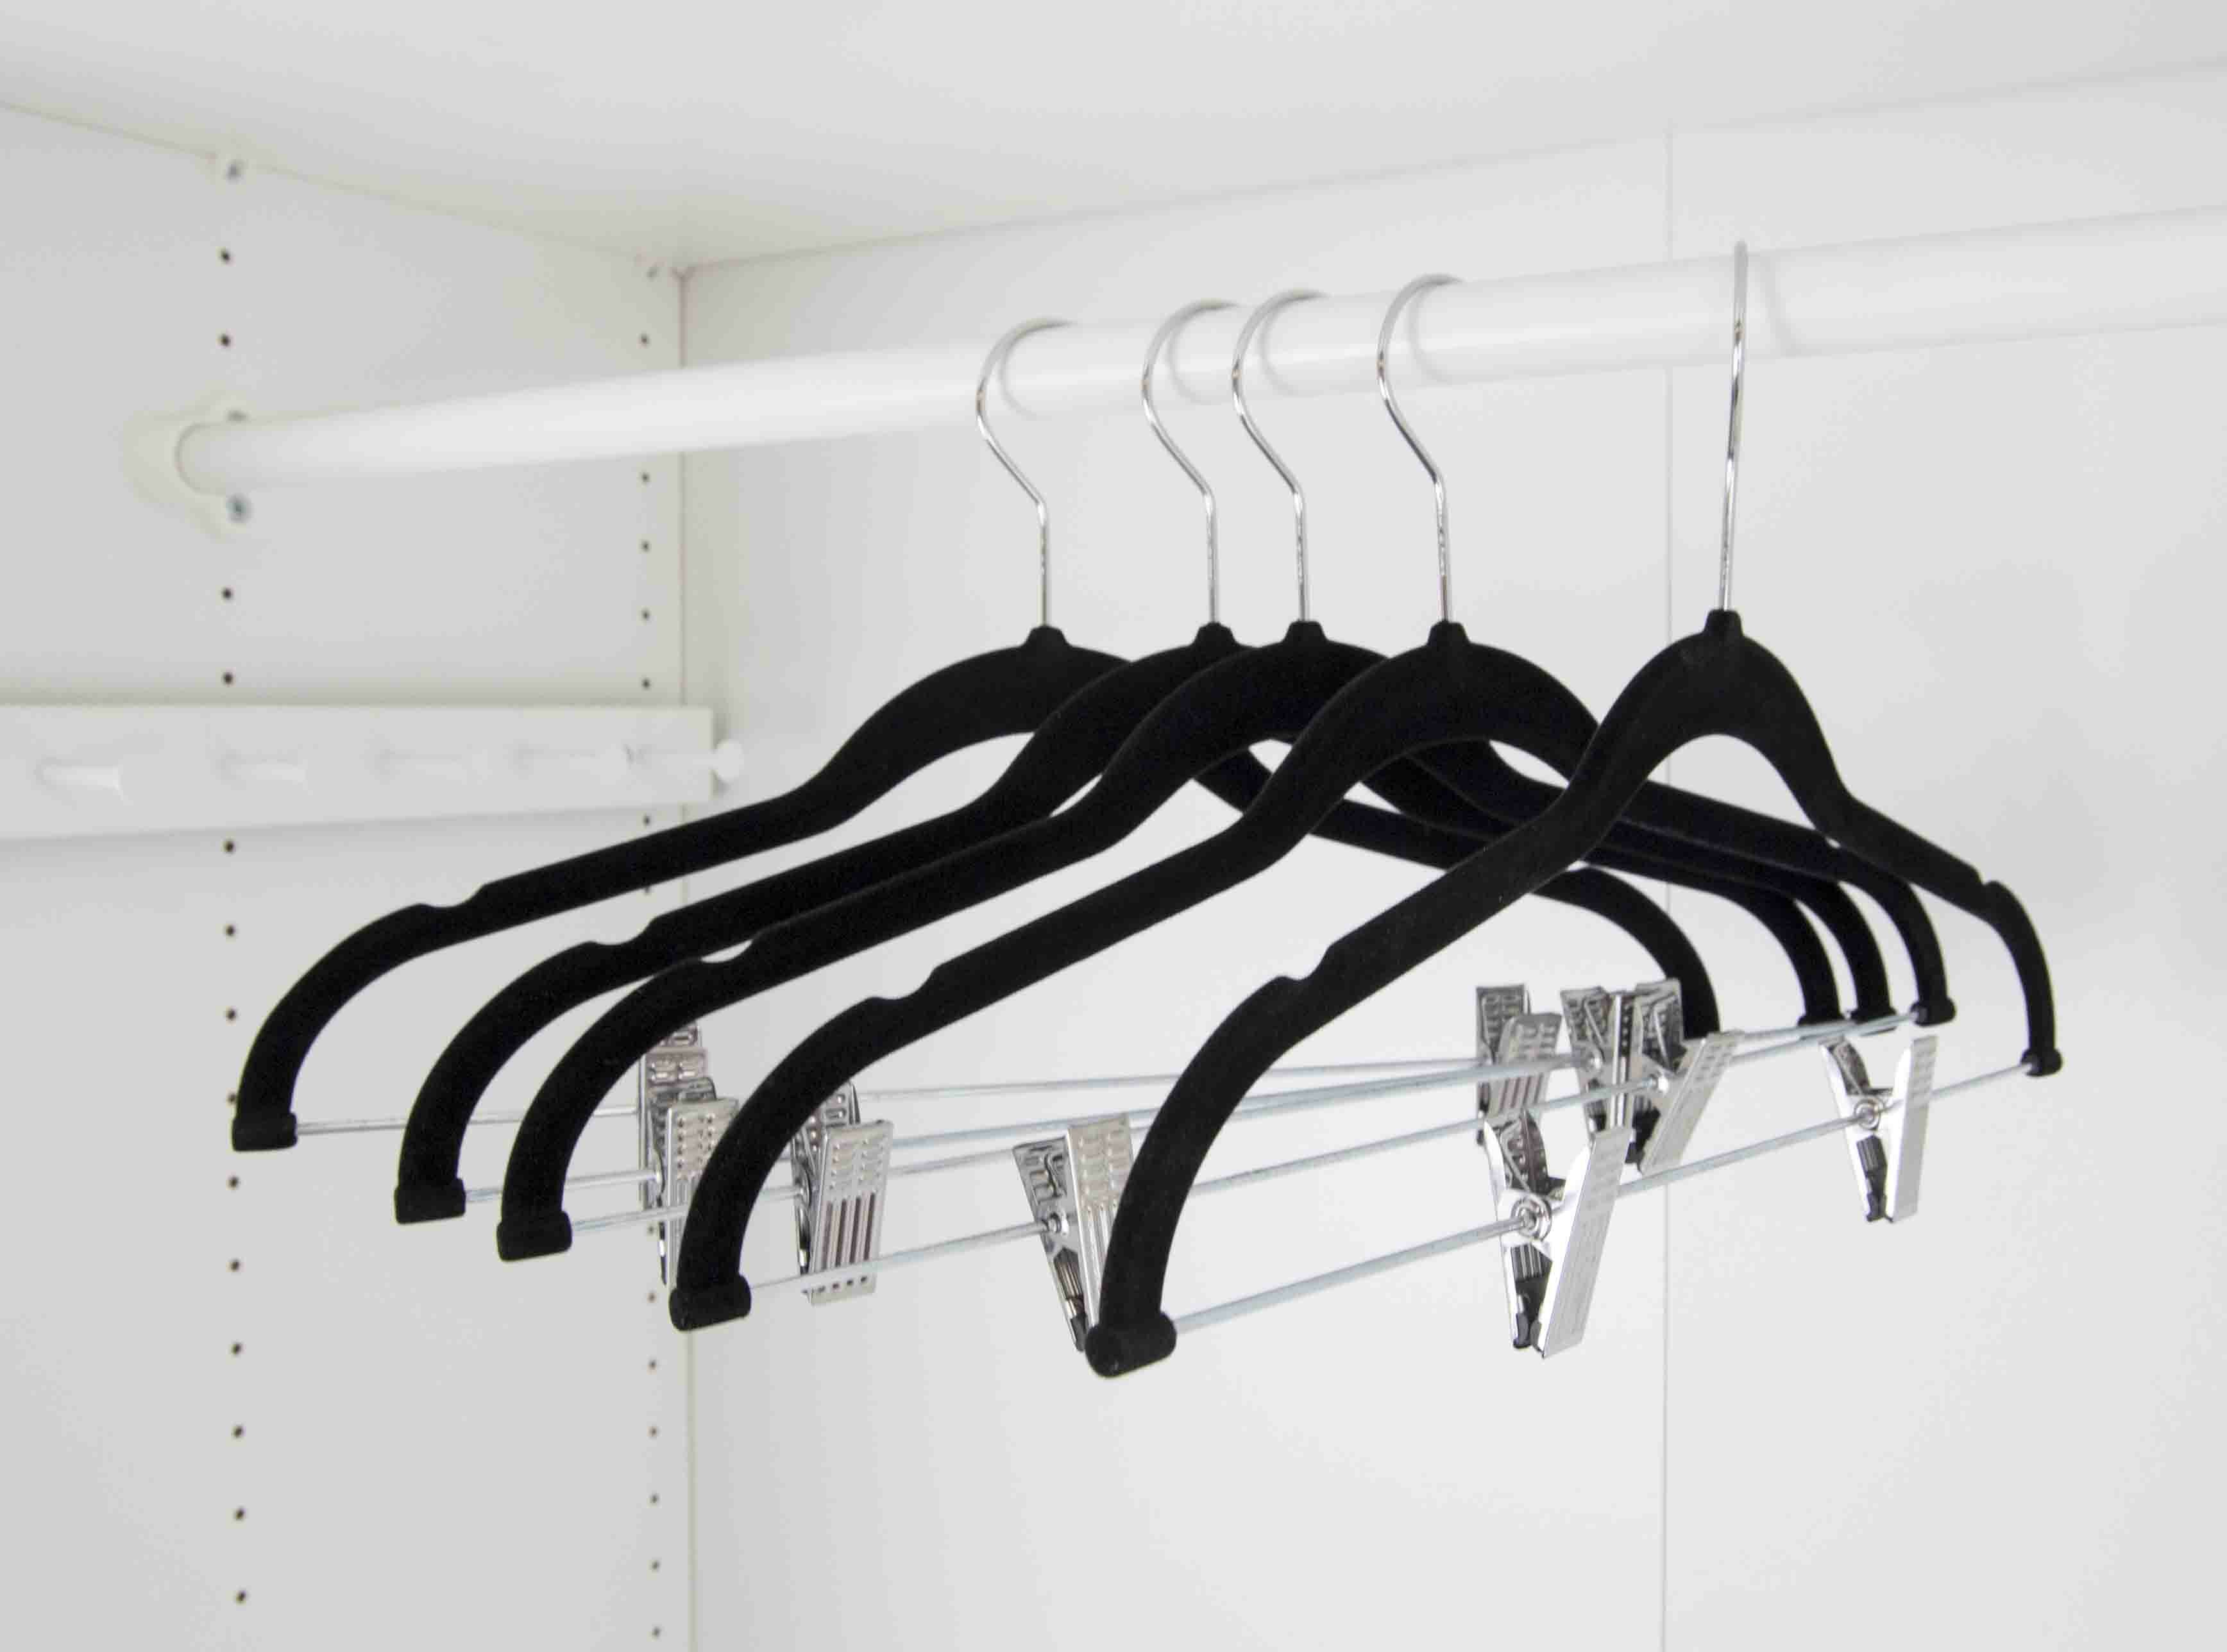 The Twillery Co.® Merrill Velvet Hanger with Clips for Skirt/Pants